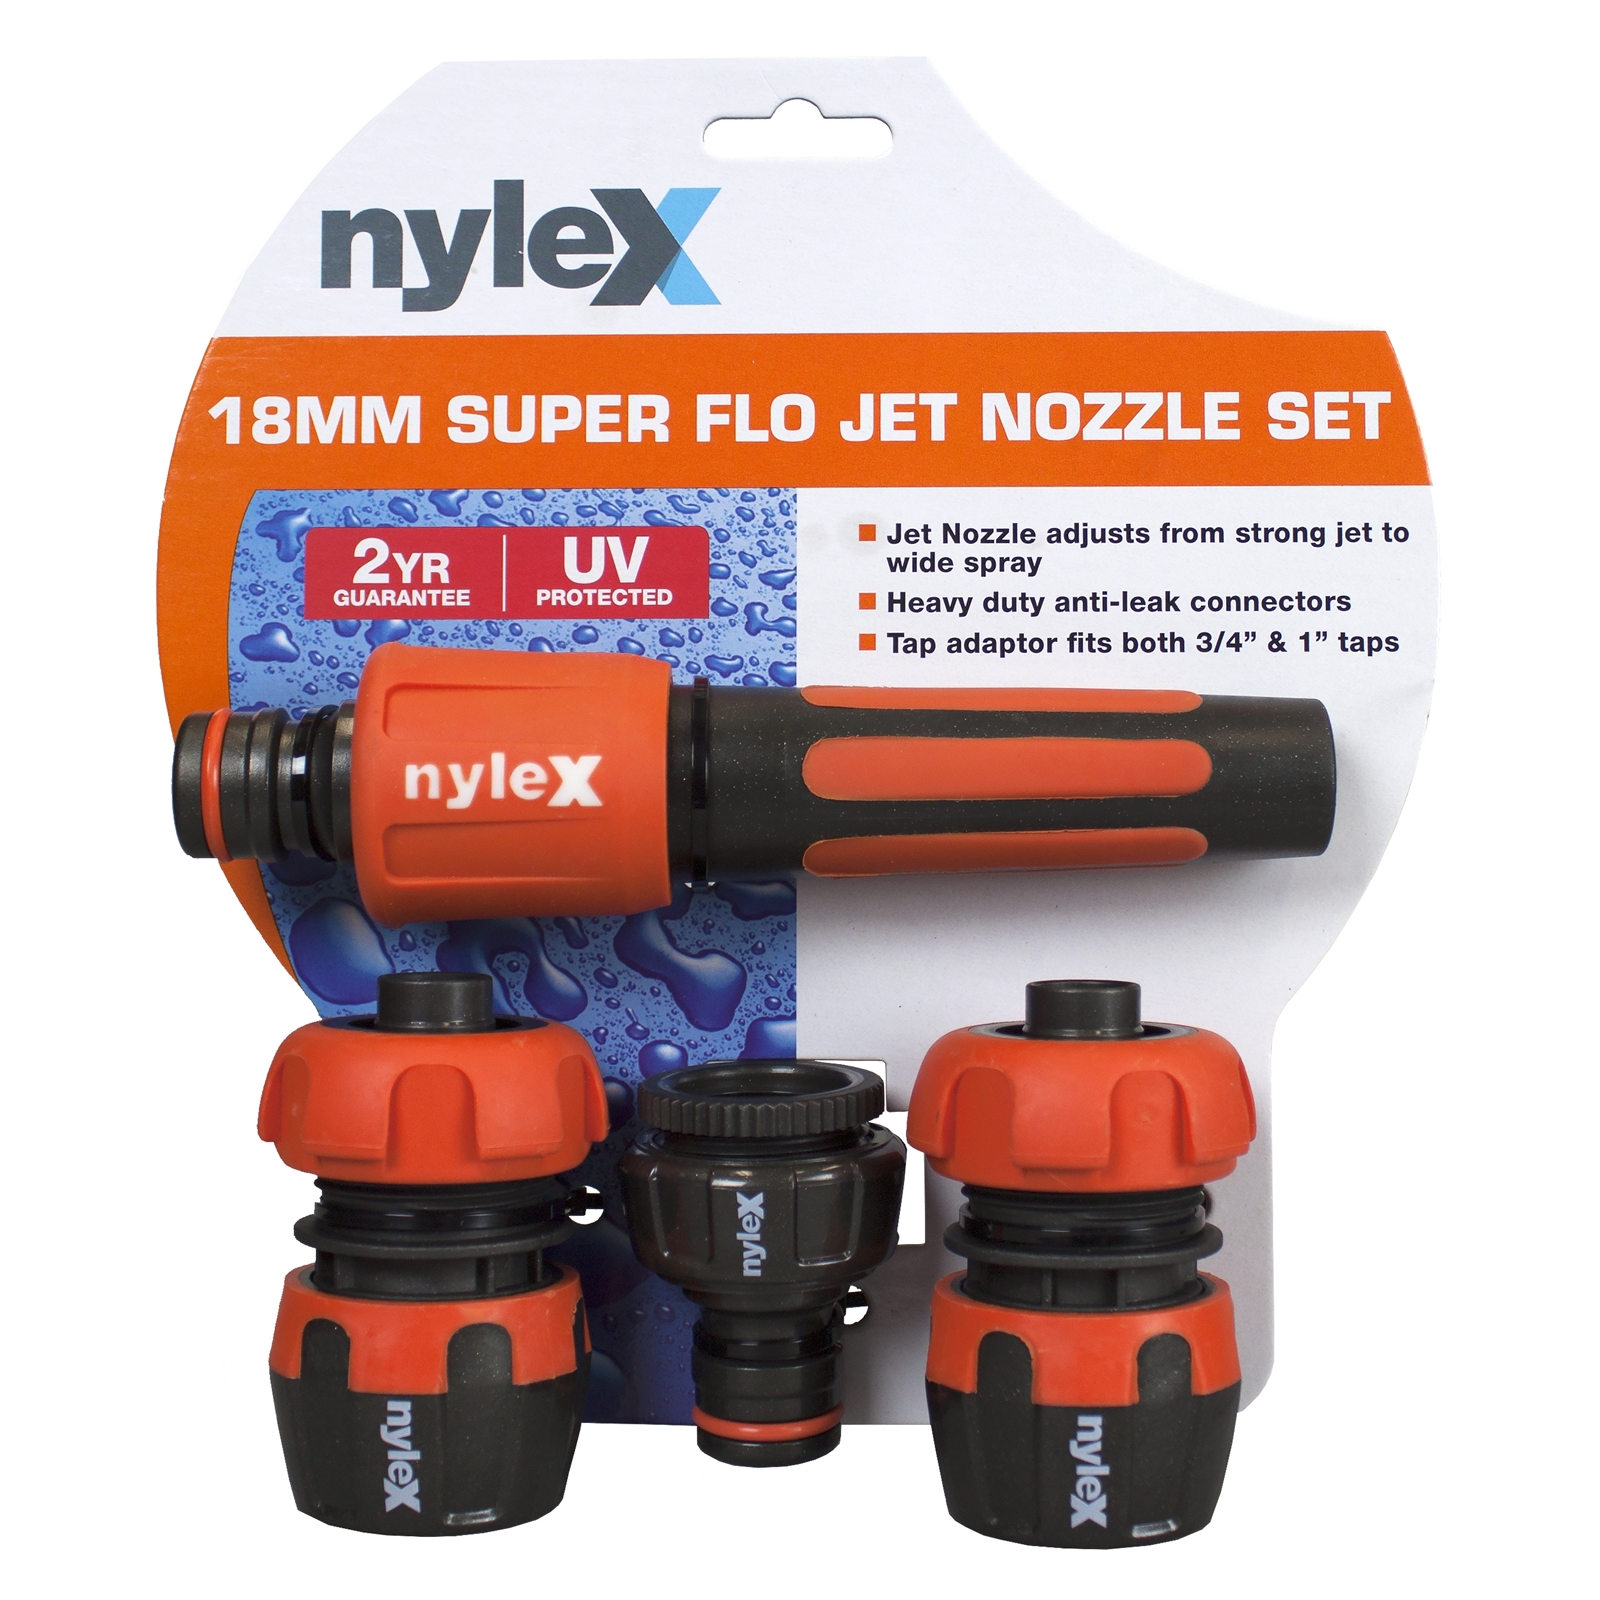 Nylex 18mm Super Flo Jet Nozzle Hose Set